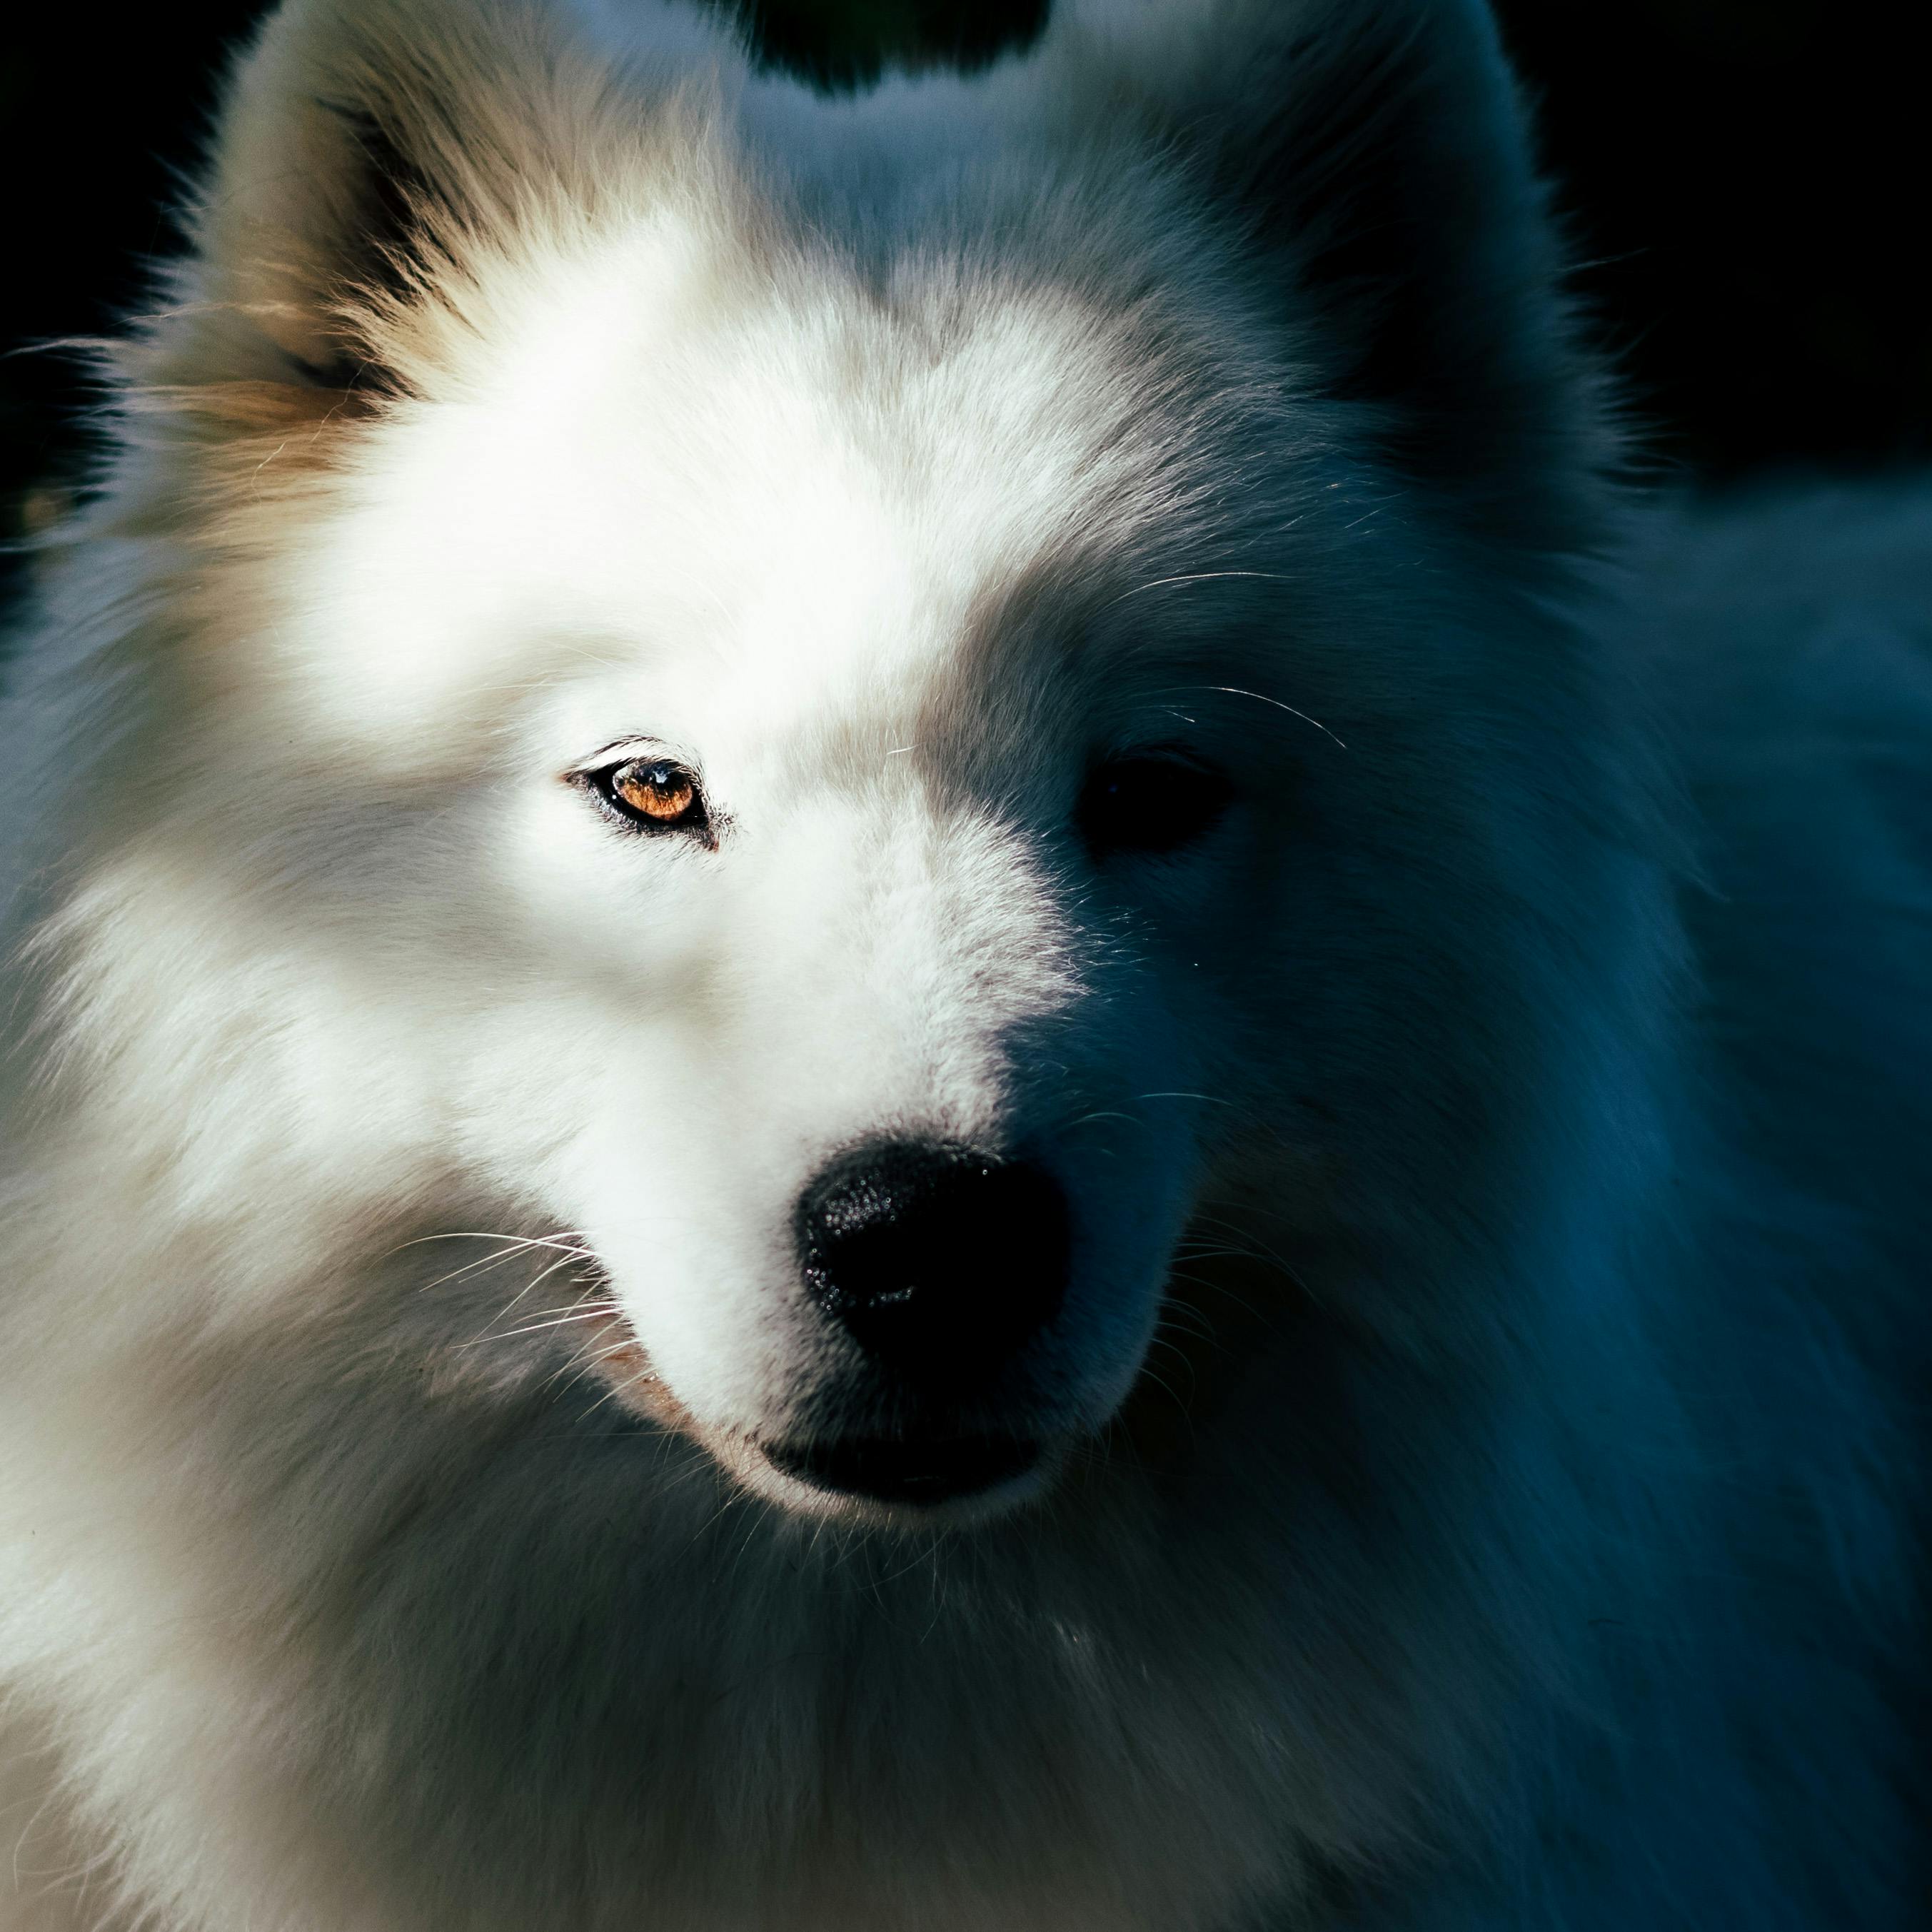 Samoyed Dog Photos, Download Free Samoyed Dog Stock Photos & HD Images